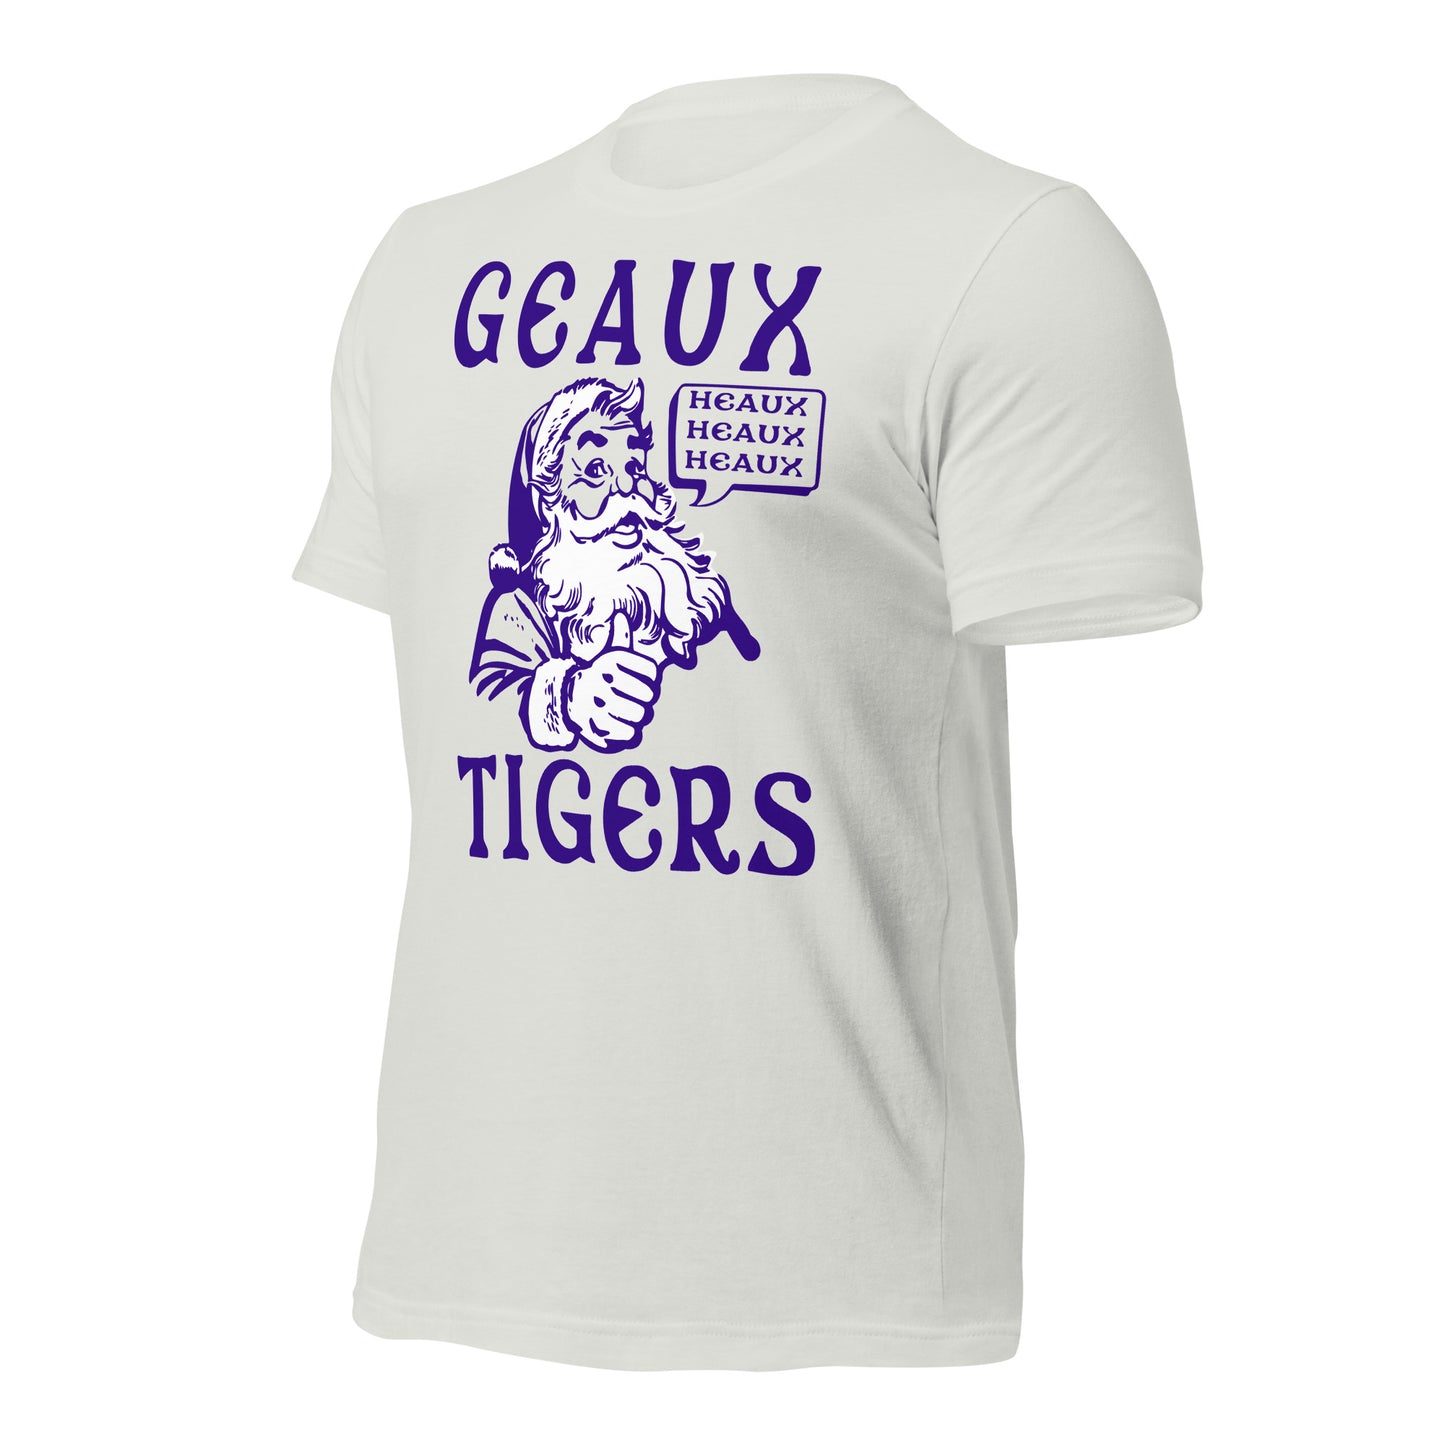 HEAX HEAUX HEAUX - CAJUN SANTA - BELLA+CANVAS - Unisex t-shirt